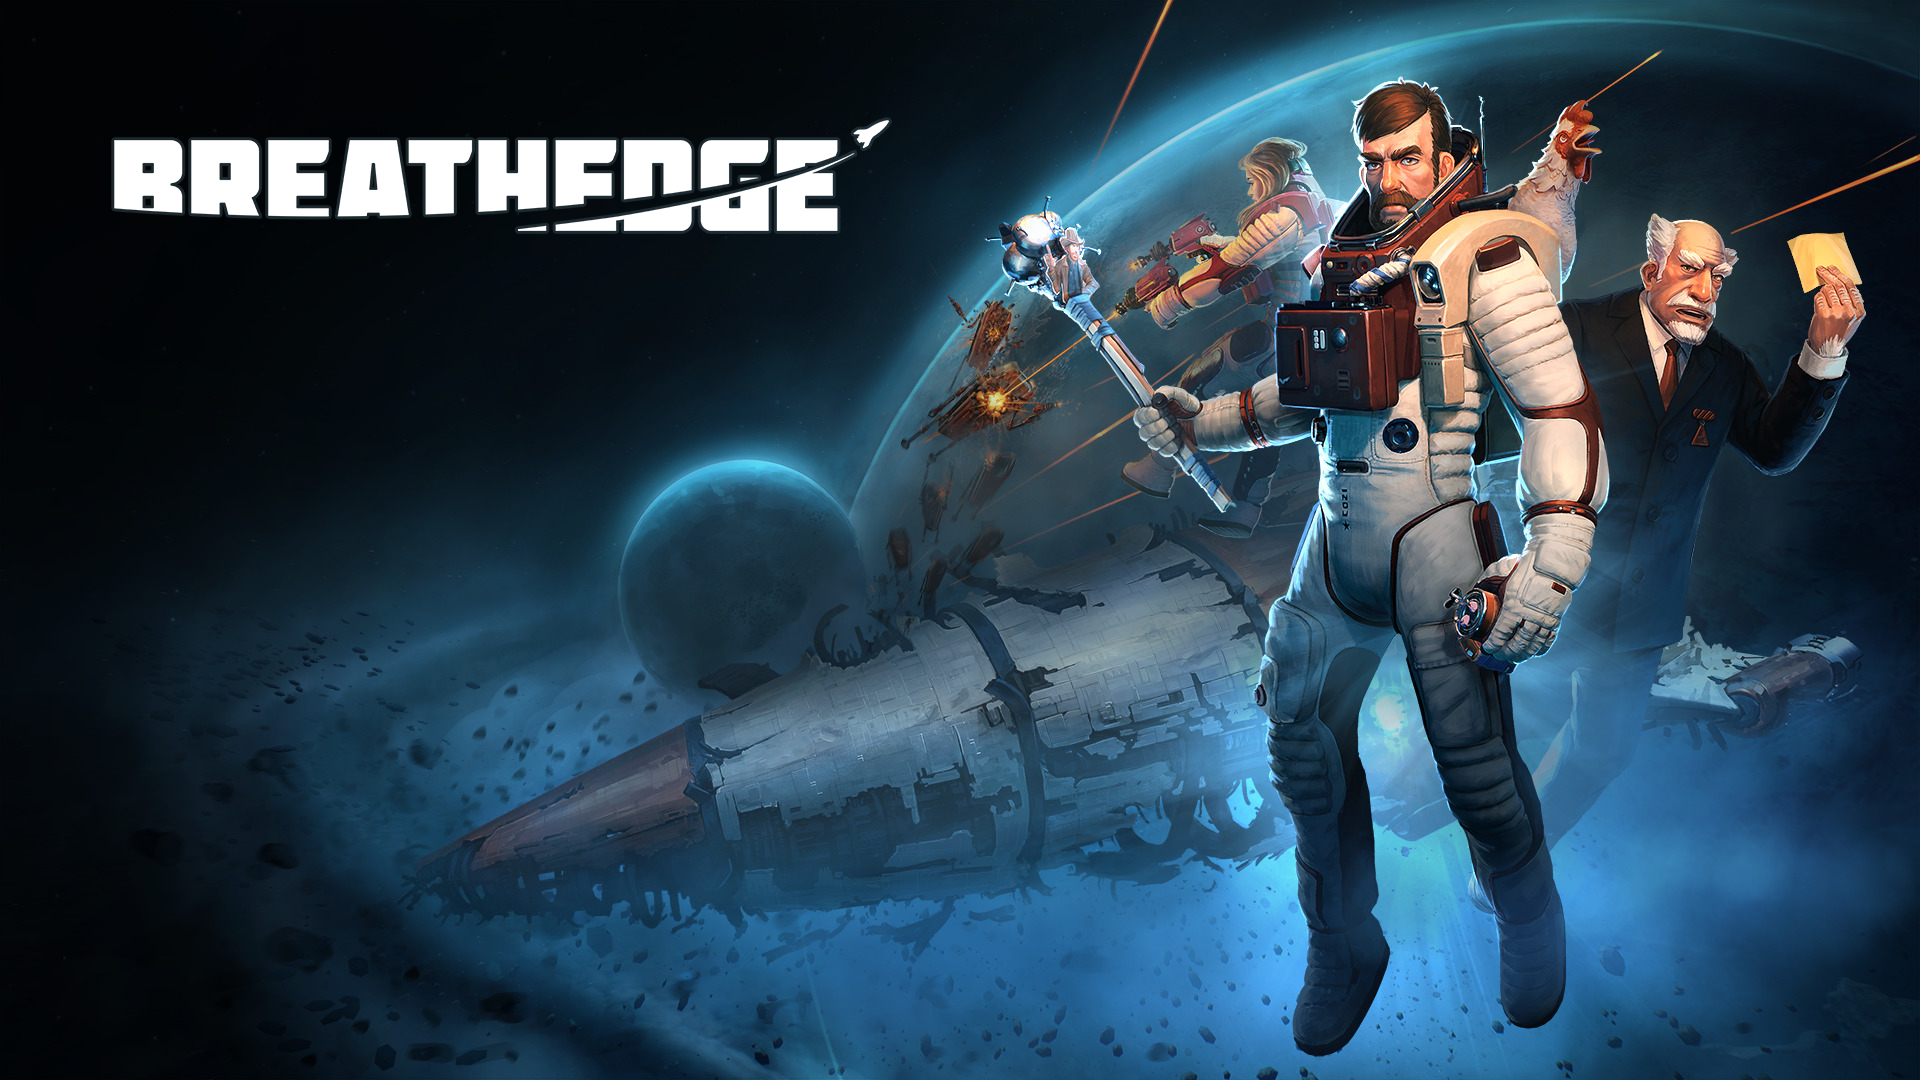 Jogo de sobrevivência e exploração no espaço, Breathedge ganhará